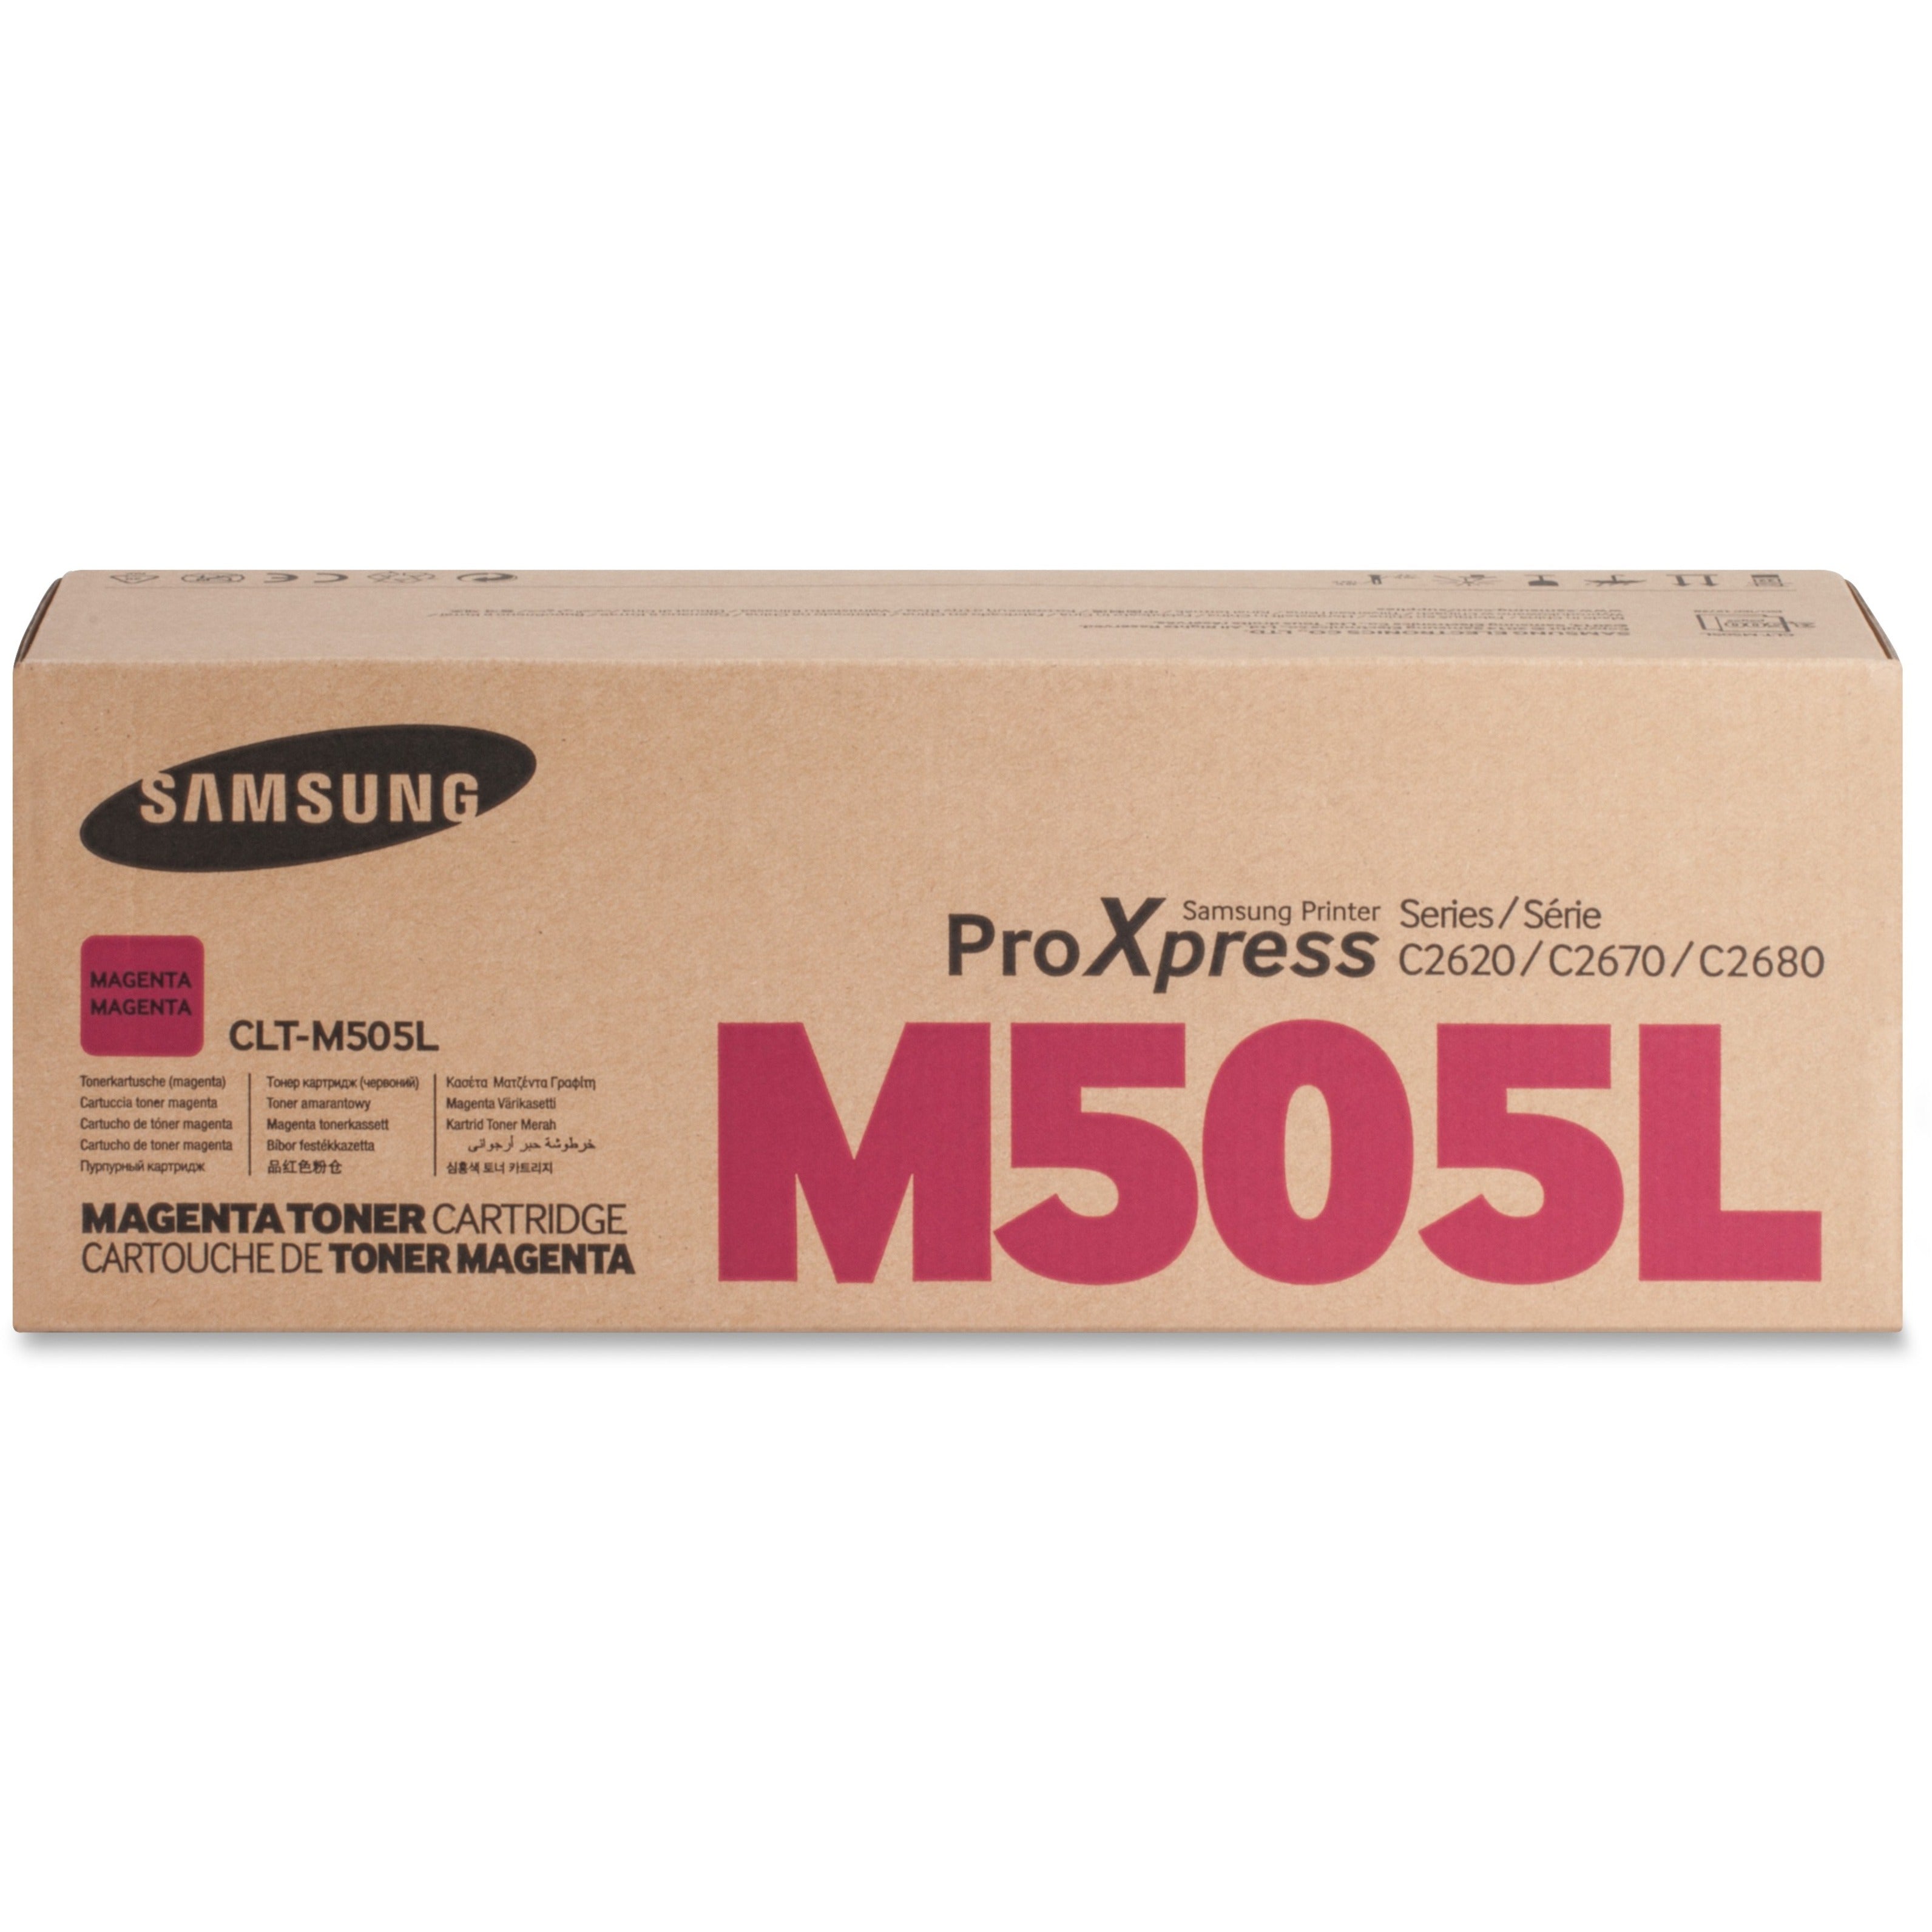 Samsung CLT-M505L Original Toner Cartridge (CLTM505L), Magenta, High Yield, 3500 Pages